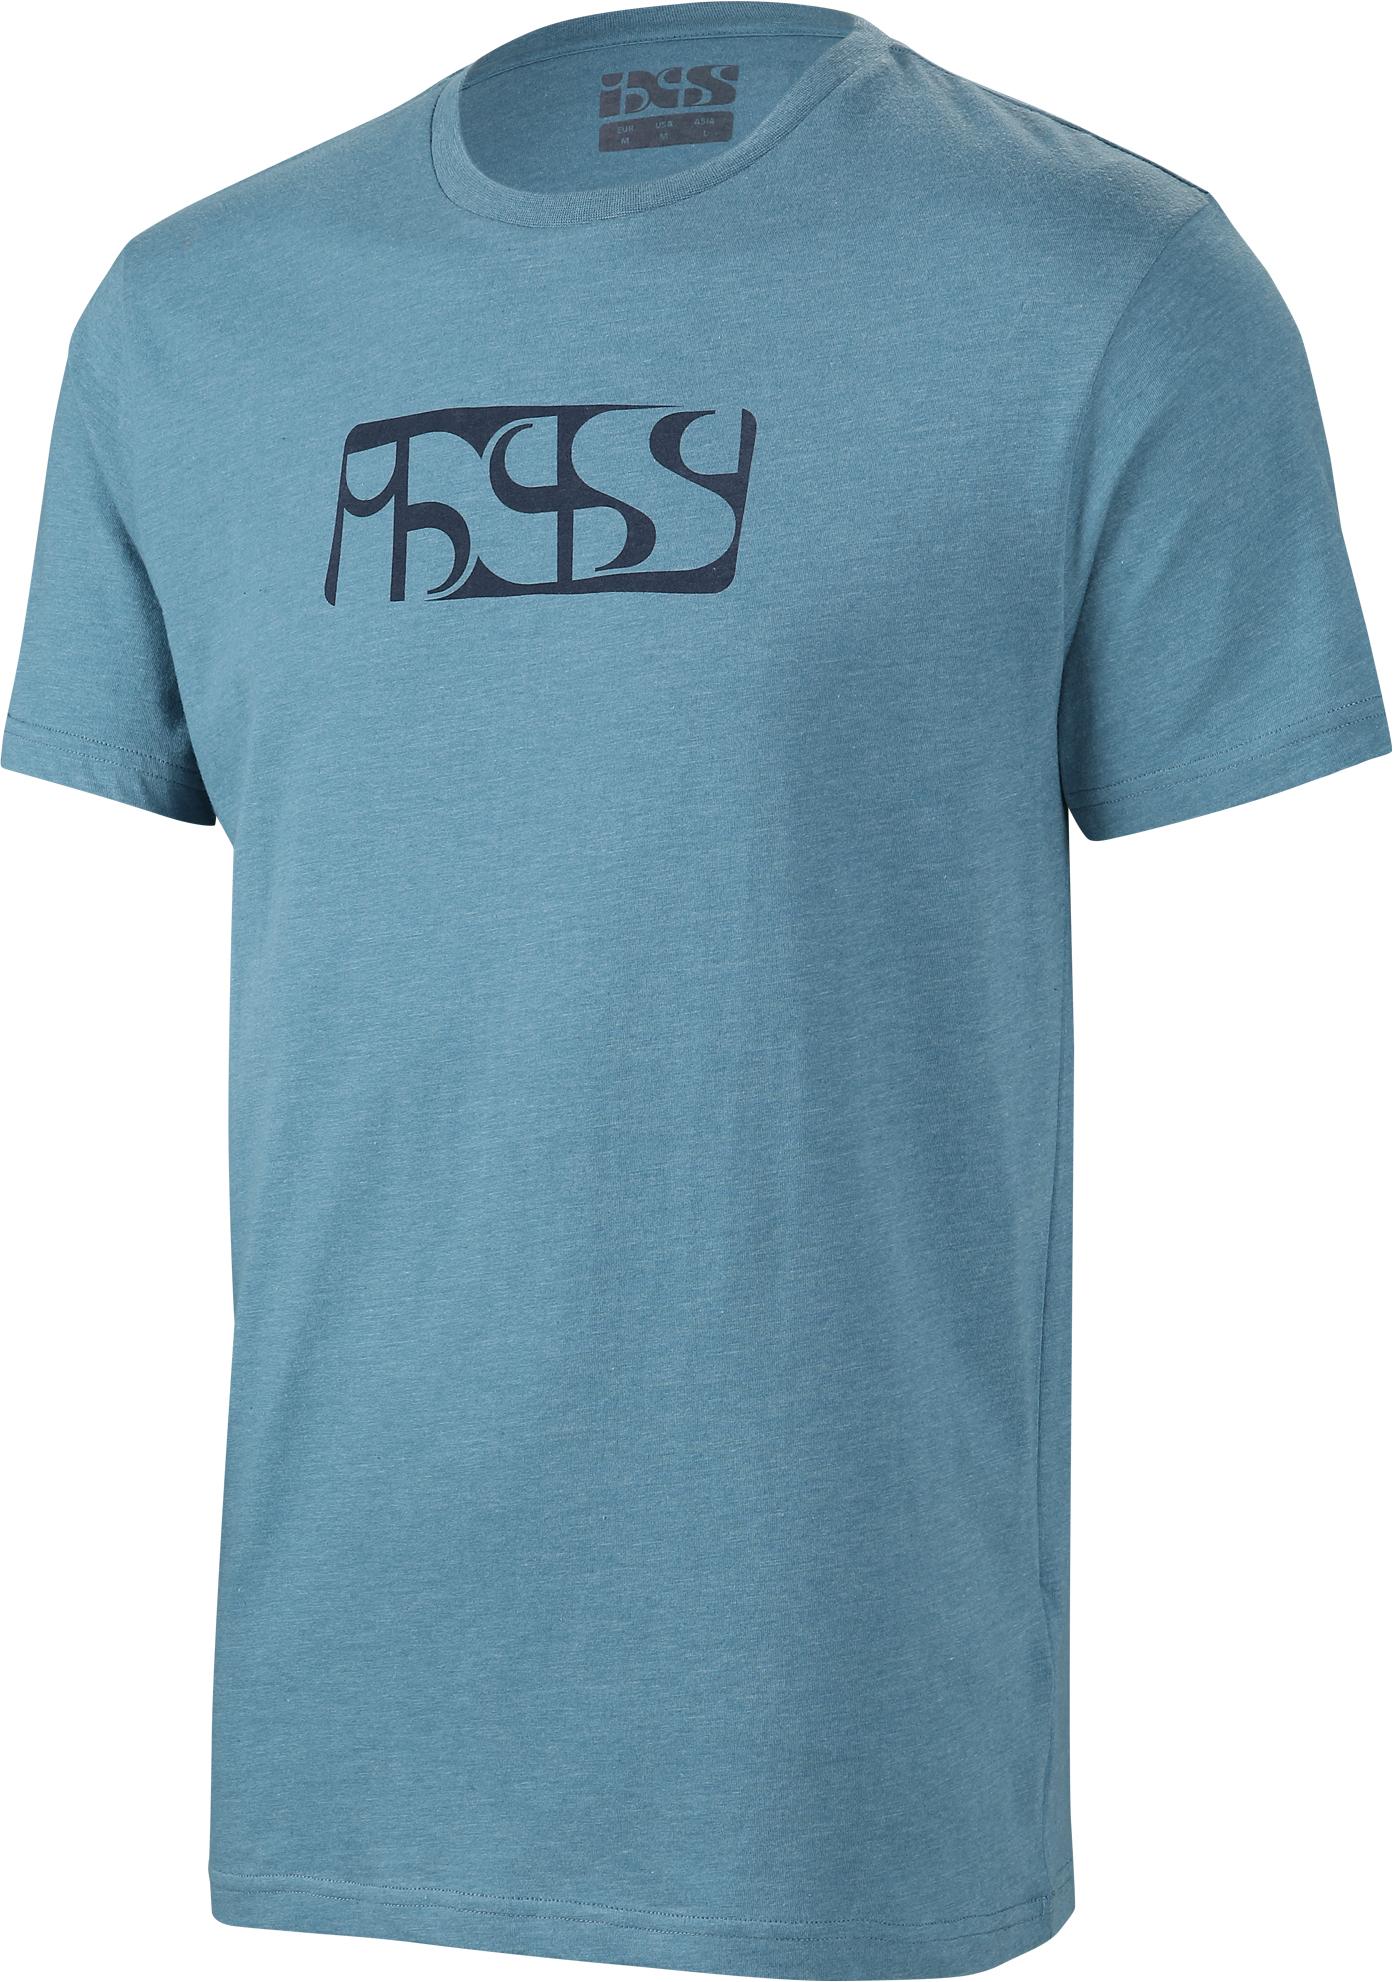 Ixs Brand 6.1 T-shirt  Ocean